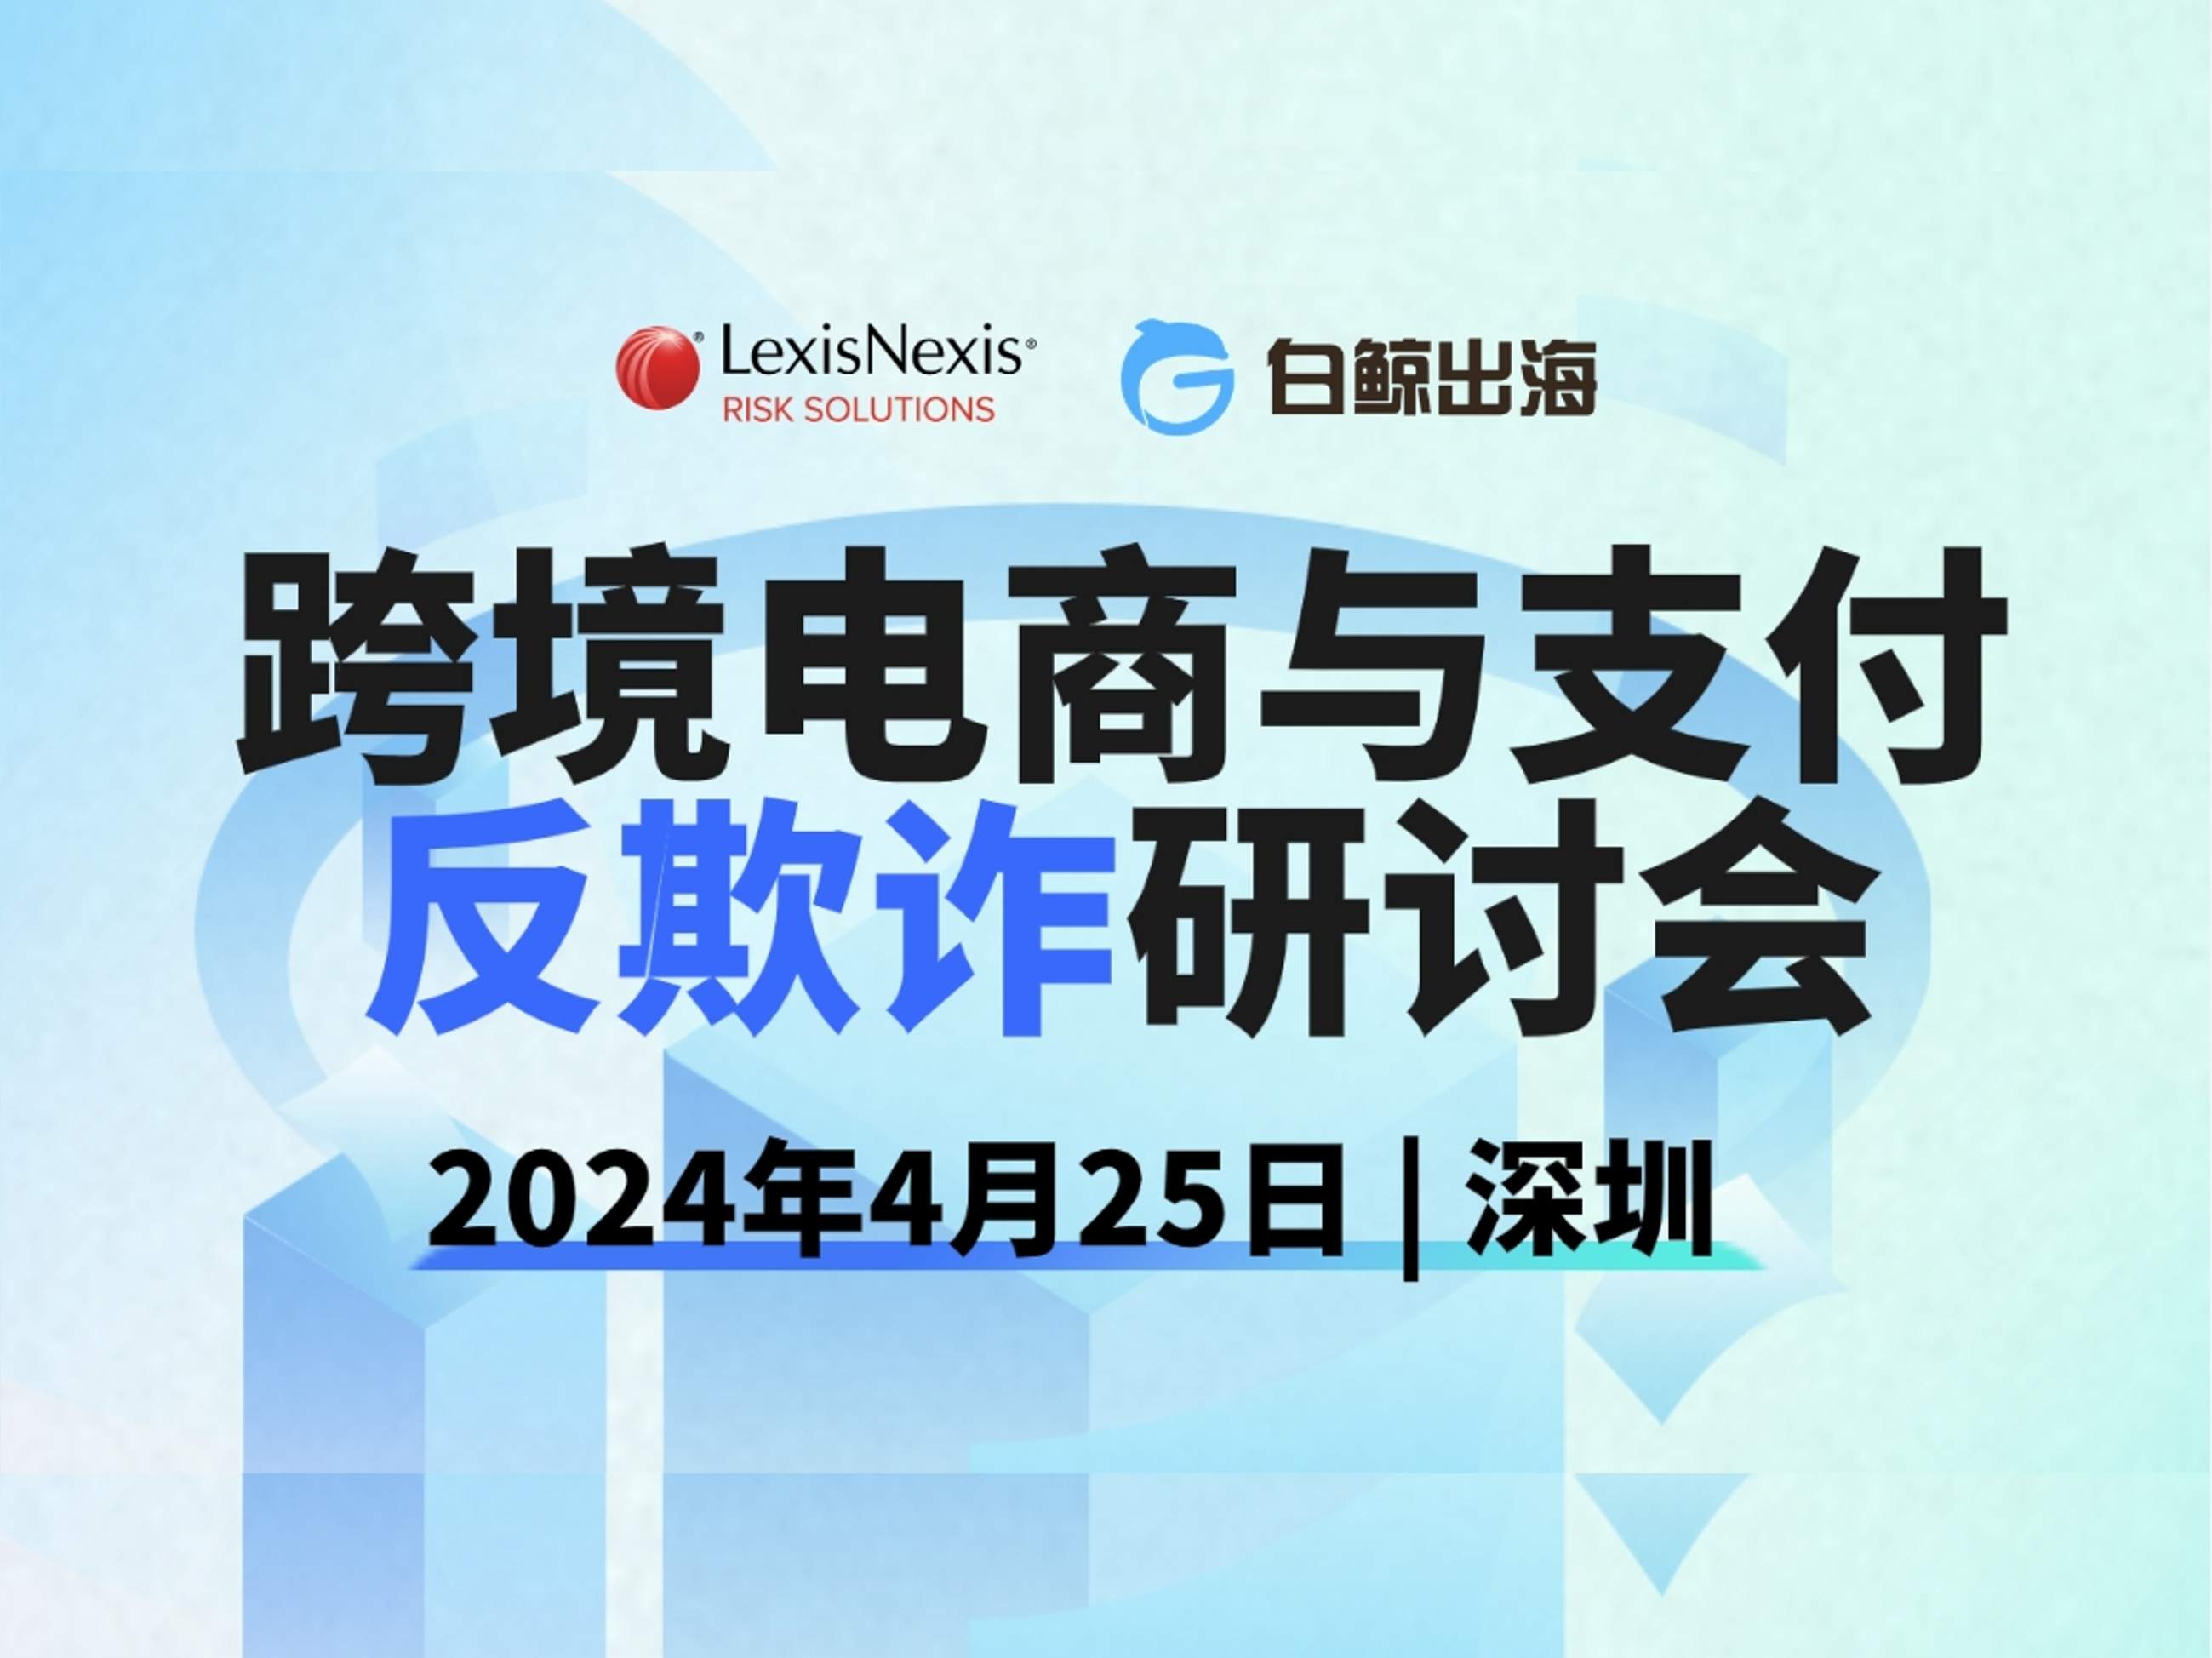 会议邀请-深圳 | 律商风险跨境电商与支付反欺诈研讨会